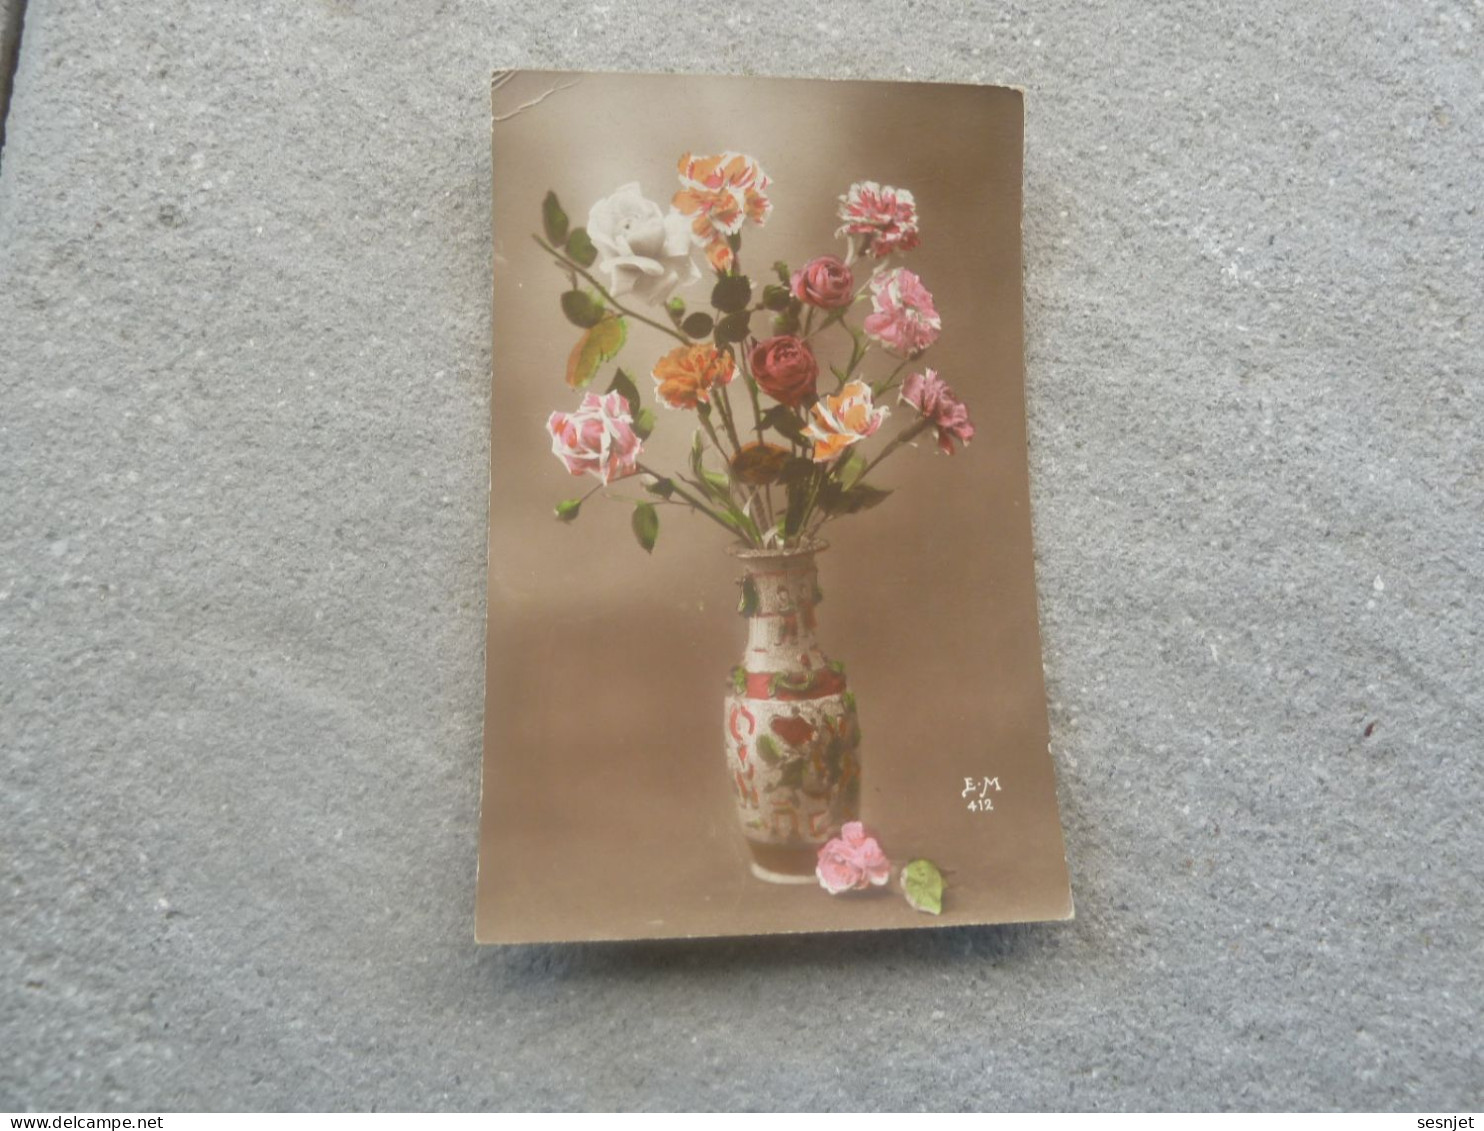 Roses En Vase - 412 - Editions E.m. - Année Non Définie - - Blumen